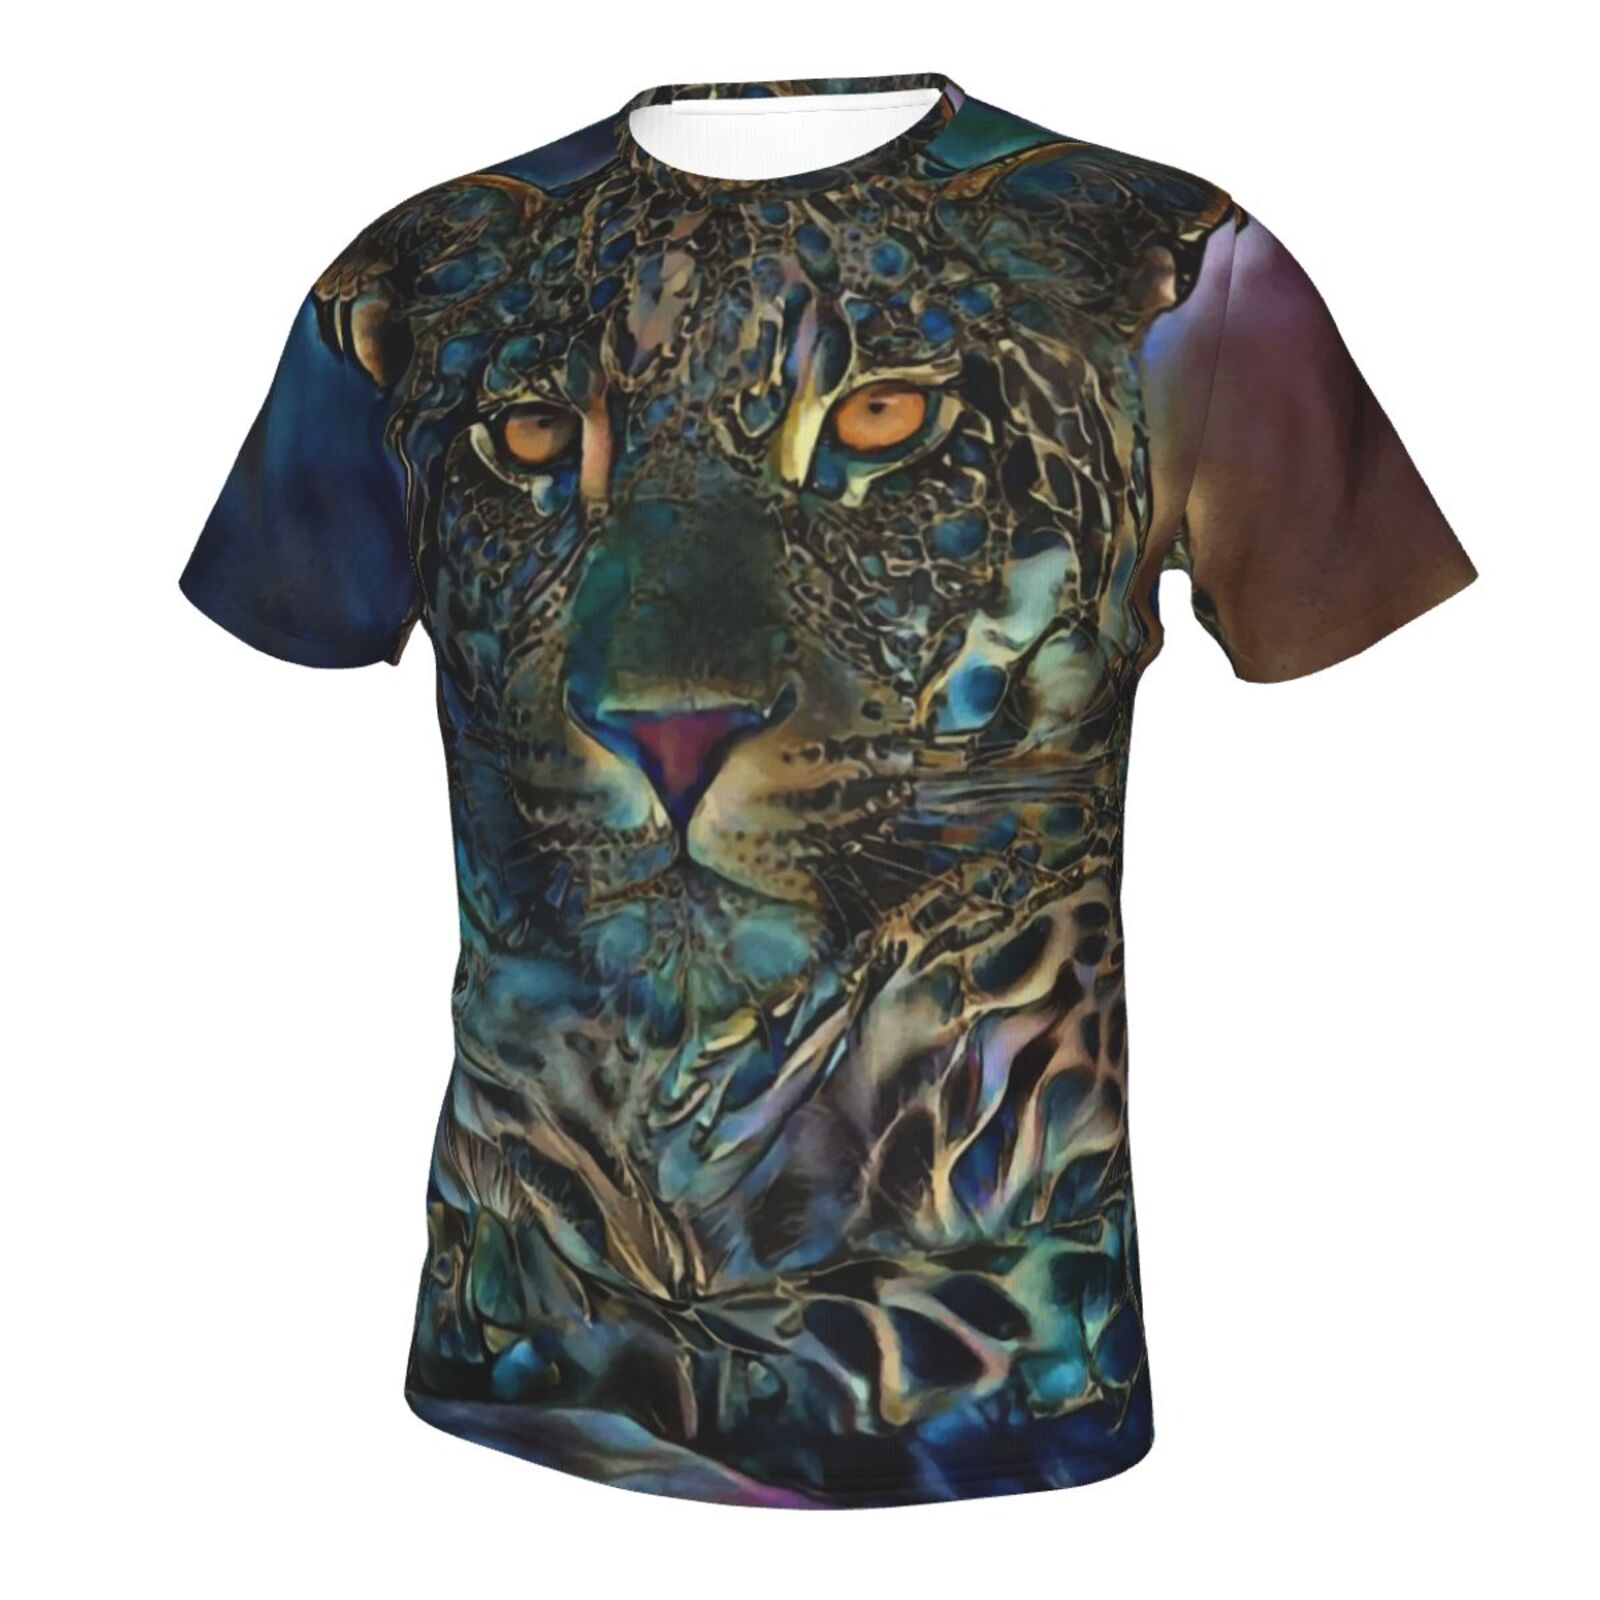 Laria Leopard Medien Mischen Elemente Klassisch T Shirt